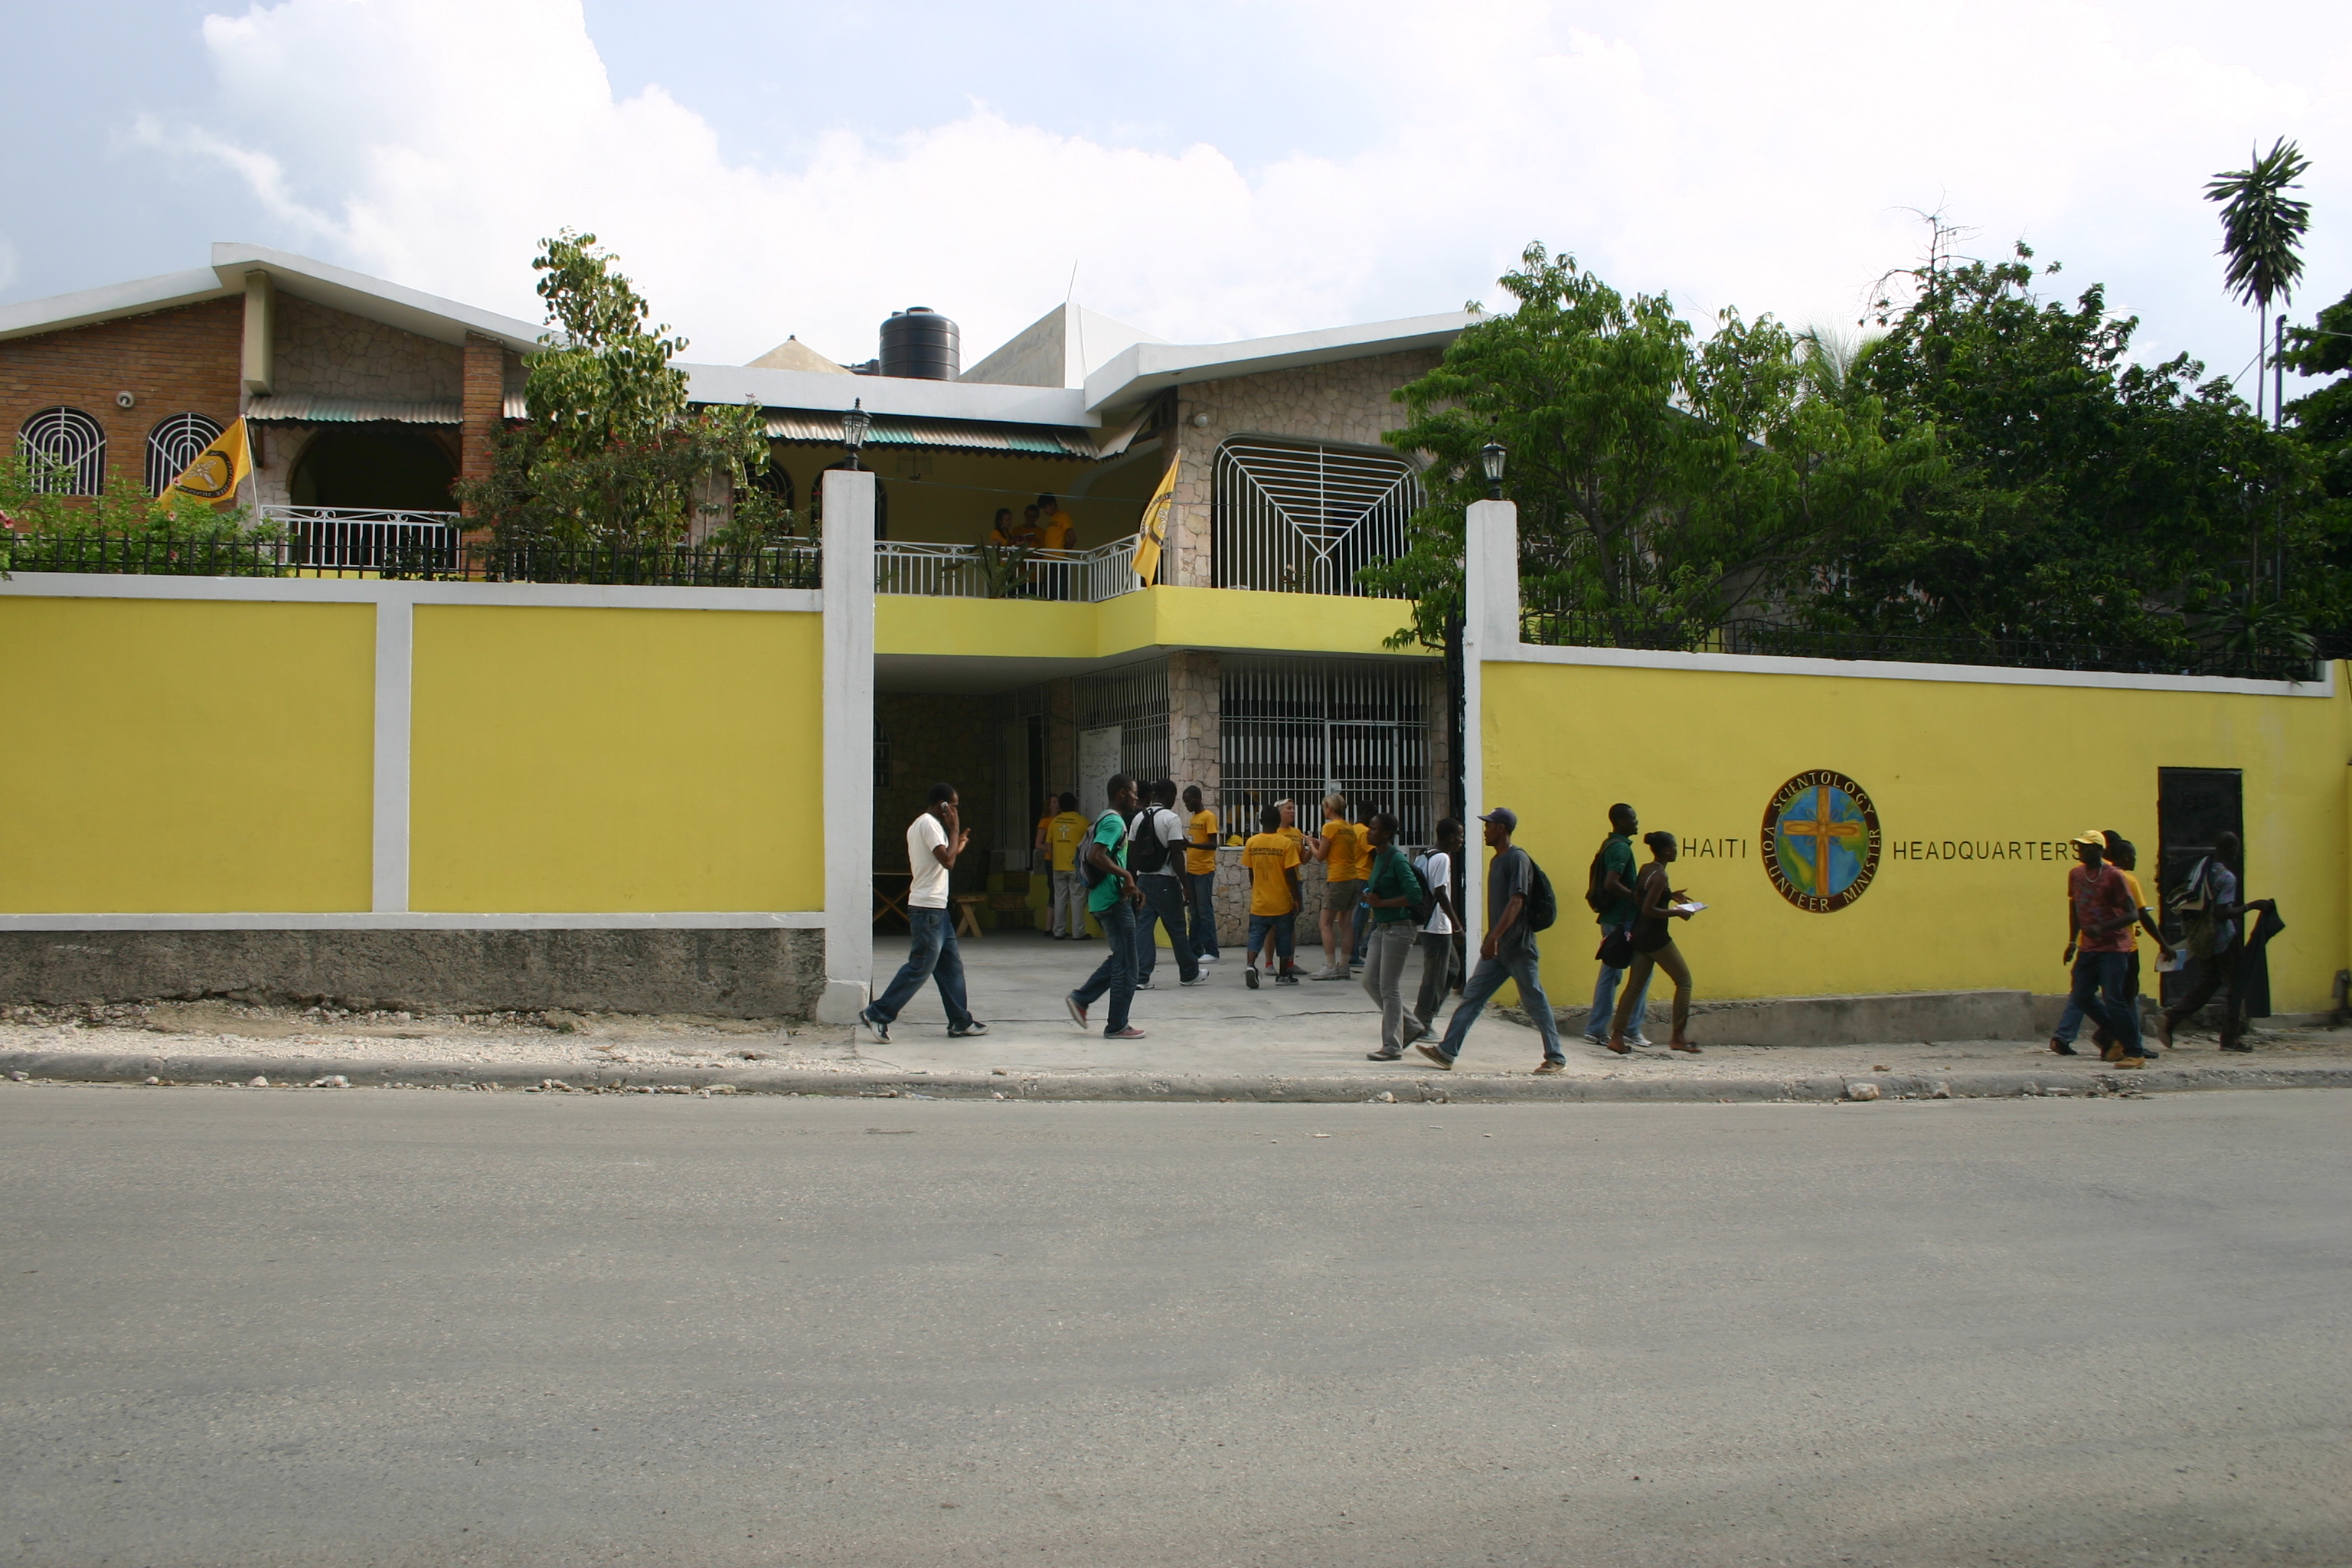 Η νέα έδρα των Εθελοντών Λειτουργών στην Αϊτή επιτρέπει την ασφαλή και αποτελεσματική παροχή βοήθειας προς τους κατοίκους της Αϊτής.